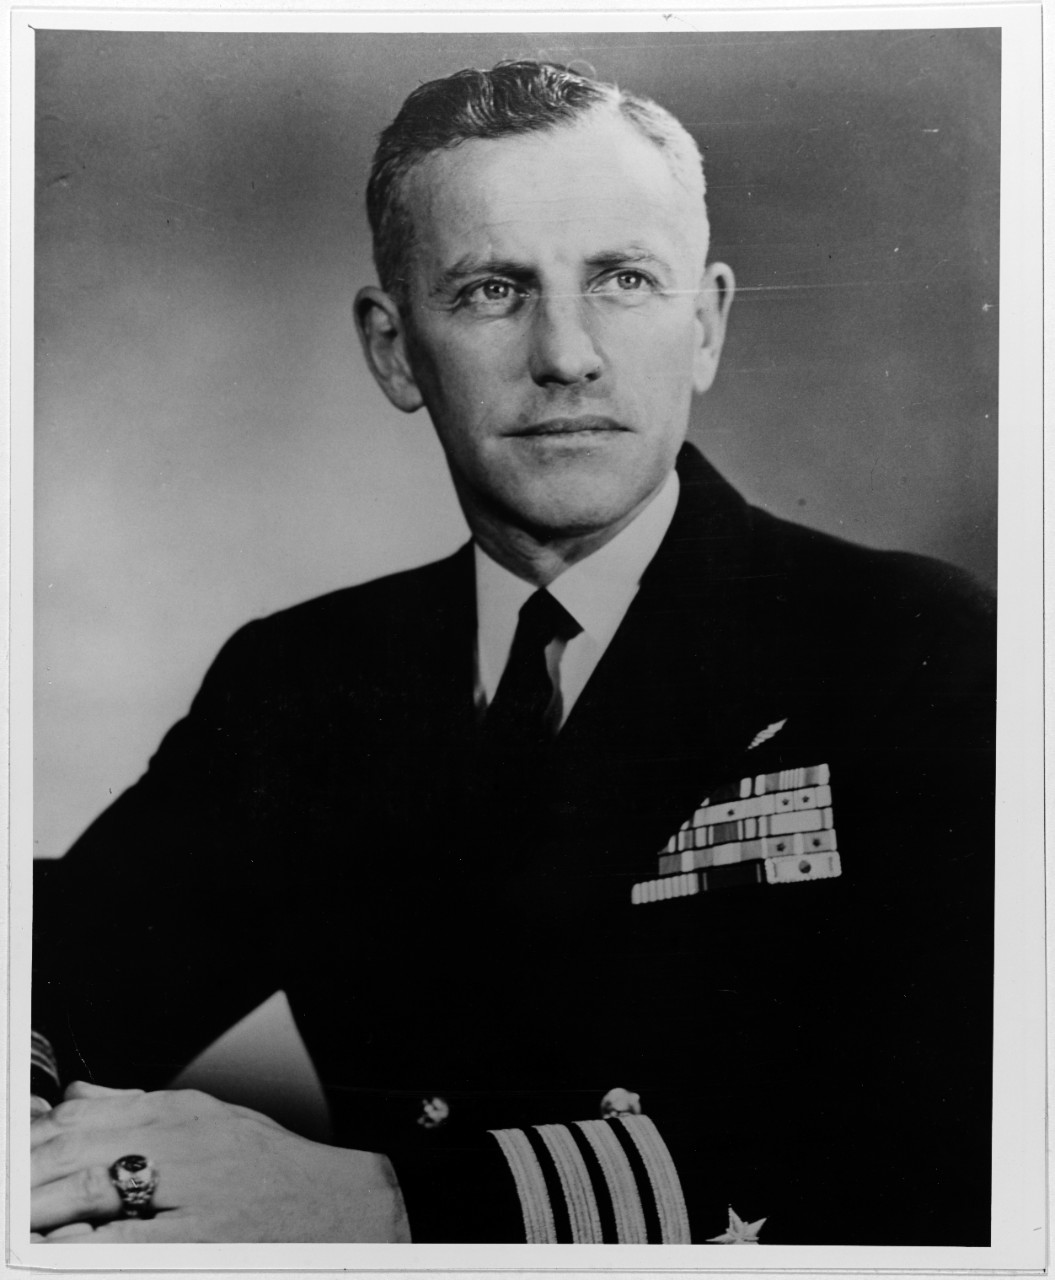 Captain William M. McCormick, USN